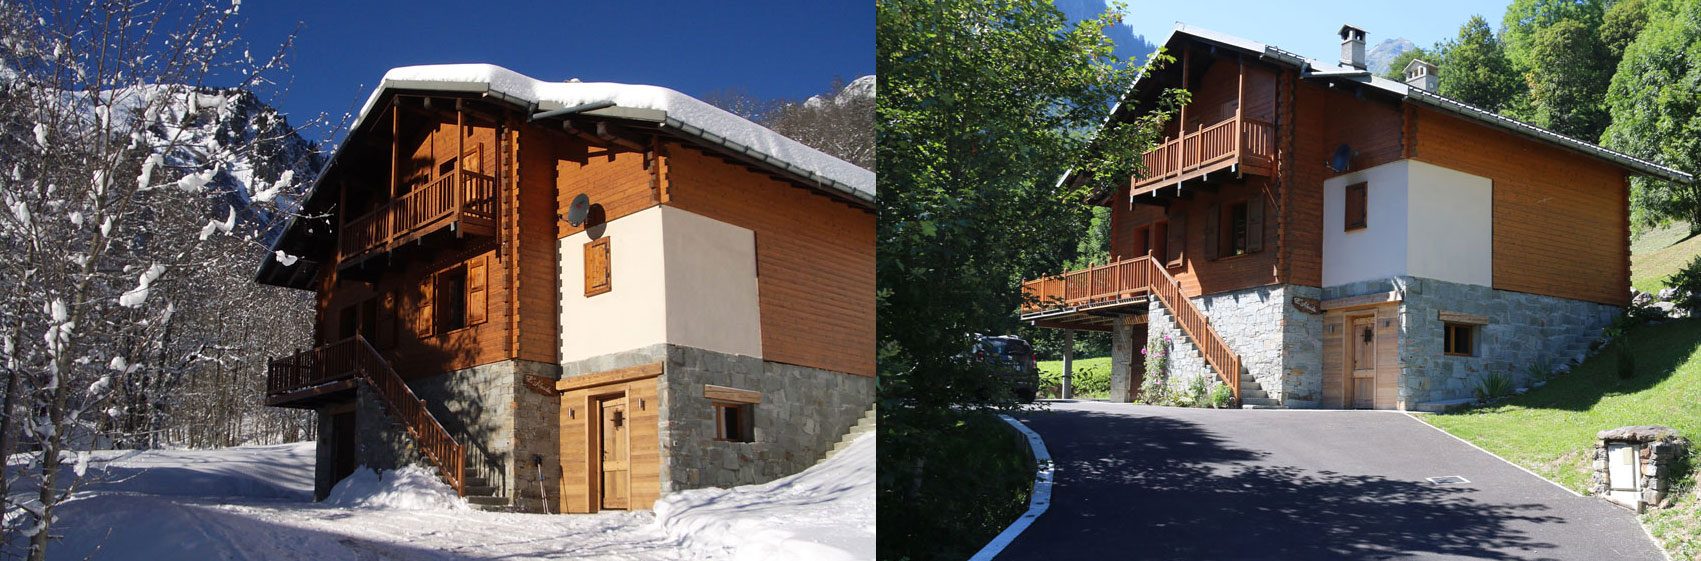 Chalet en Savoie Mont-Blanc coté hiver - été